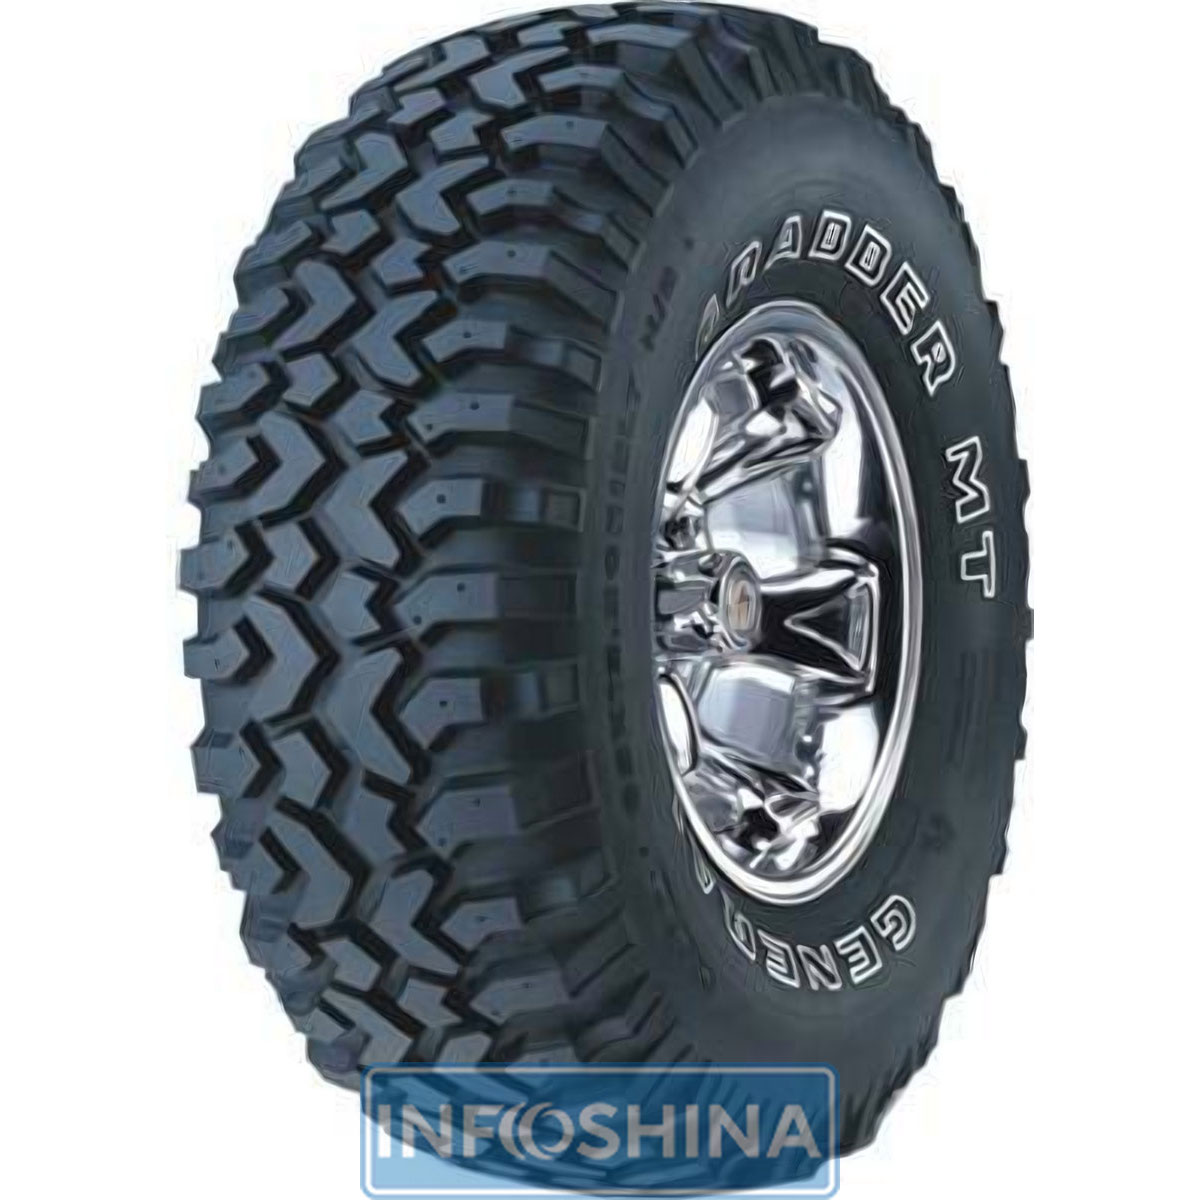 Купить шины General Tire Grabber MT 235/75 R15 110Q